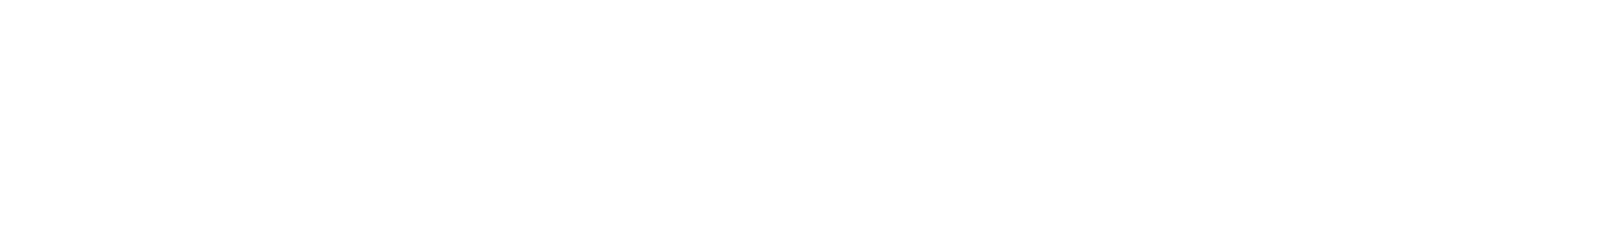 Nielsen logo large for dark backgrounds (transparent PNG)